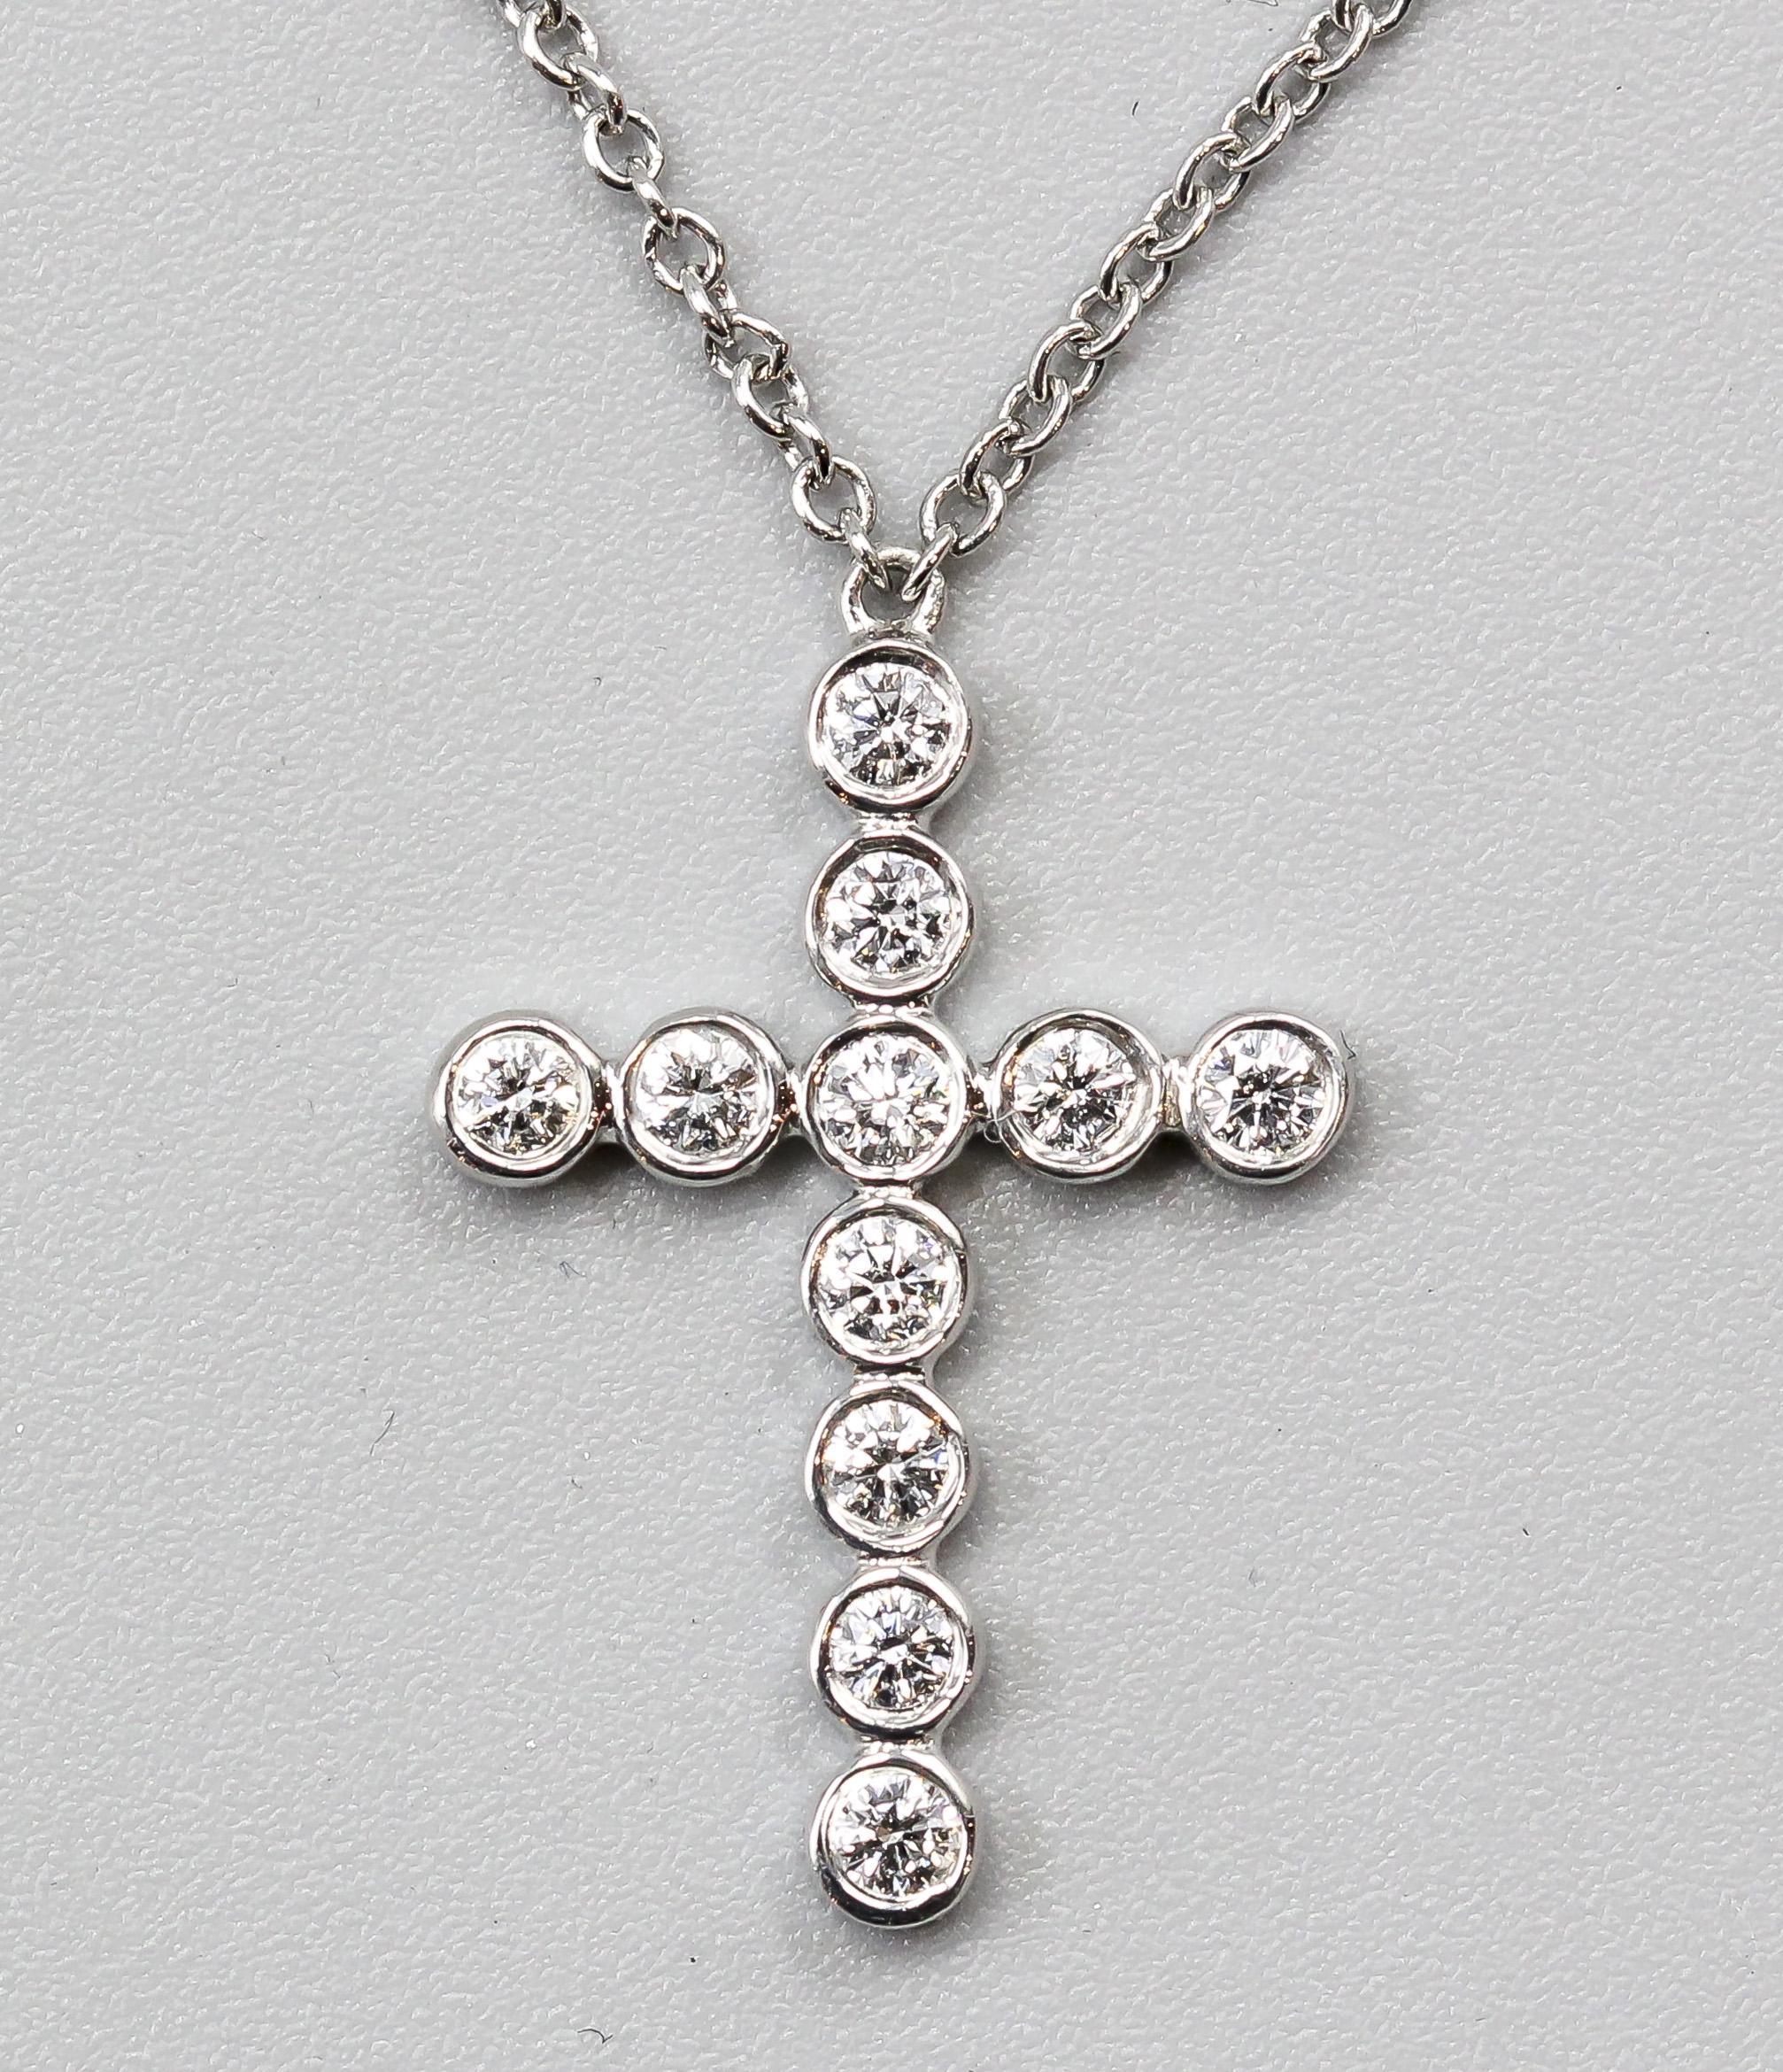 Die Tiffany & Co. Die Jazz Bezel Set Diamond Platinum Cross Pendant Necklace ist ein atemberaubendes und anmutiges Schmuckstück, das die Hingabe der Marke für exquisite Handwerkskunst und zeitloses Design unterstreicht. Diese Anhänger-Halskette ist